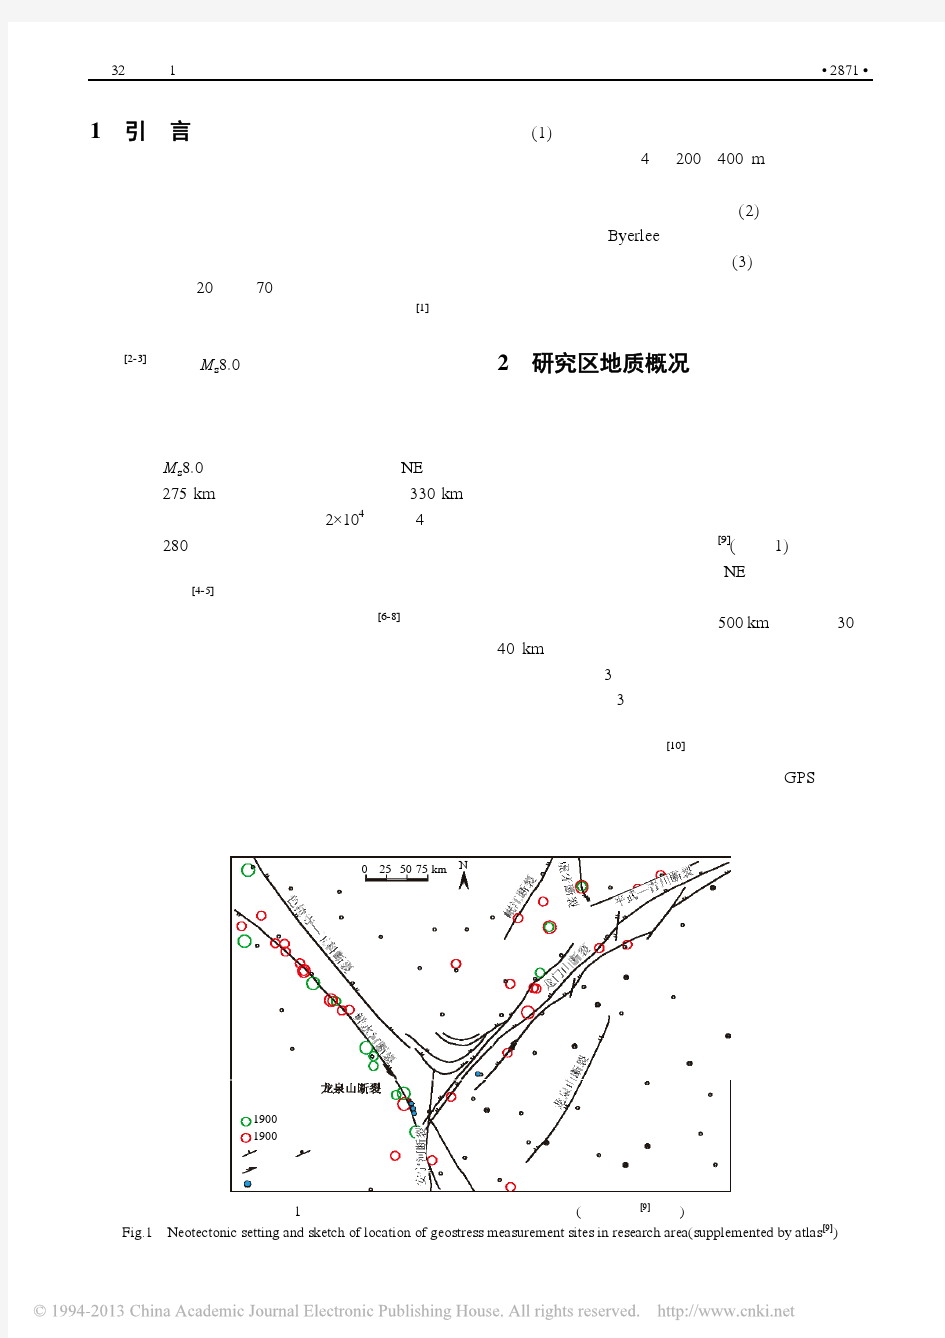 龙门山断裂带西南段现今地应力状态与 地震危险性分析